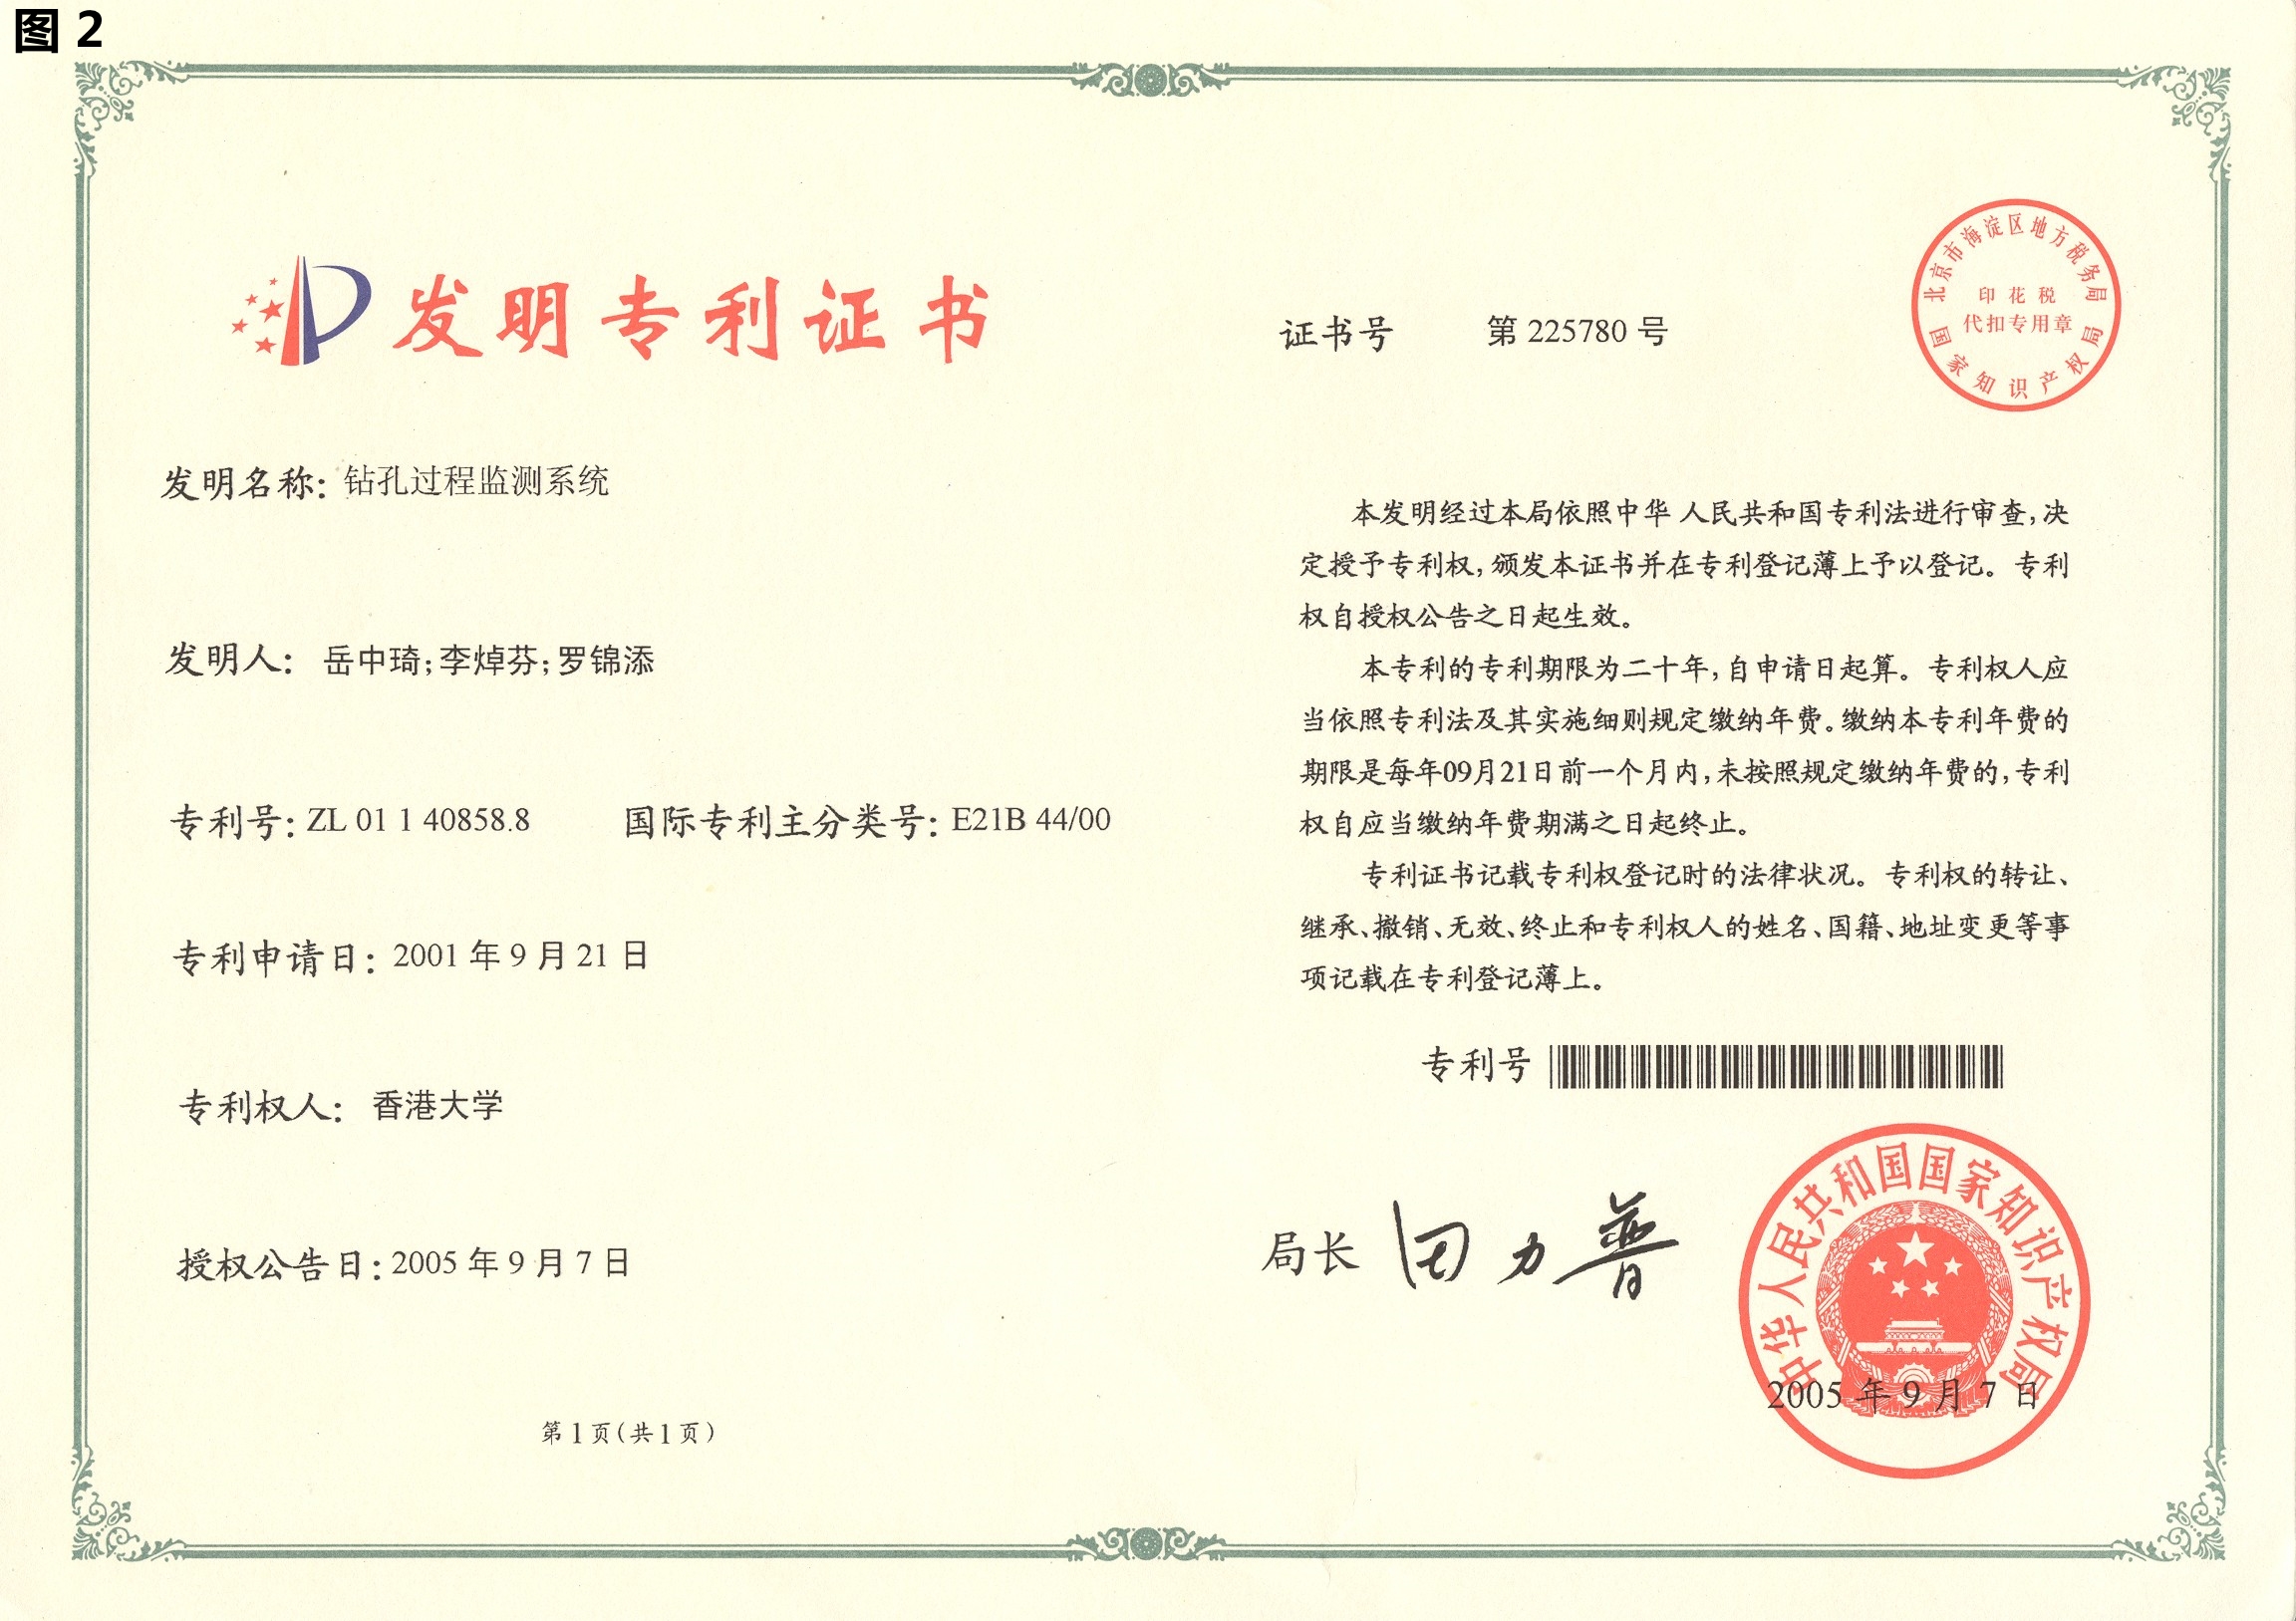 DPM-Chinese-Patent-Certificate.jpg